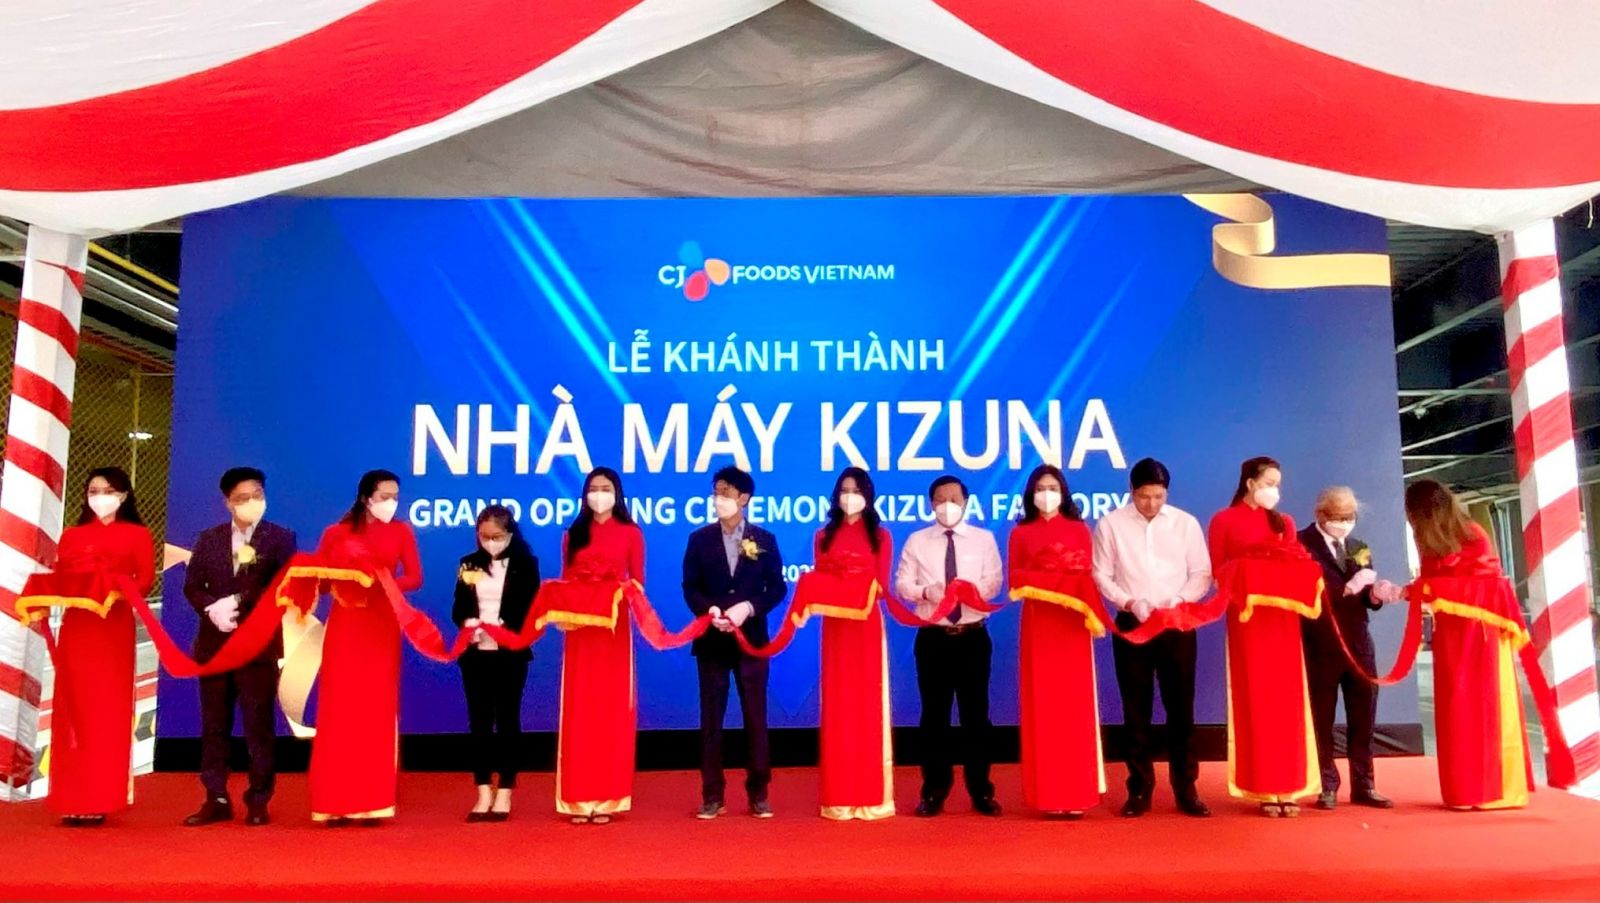 Đại biểu thực hiện nghi thức khánh thành nhà máy CJ Foods Việt Nam - Kizuna 3